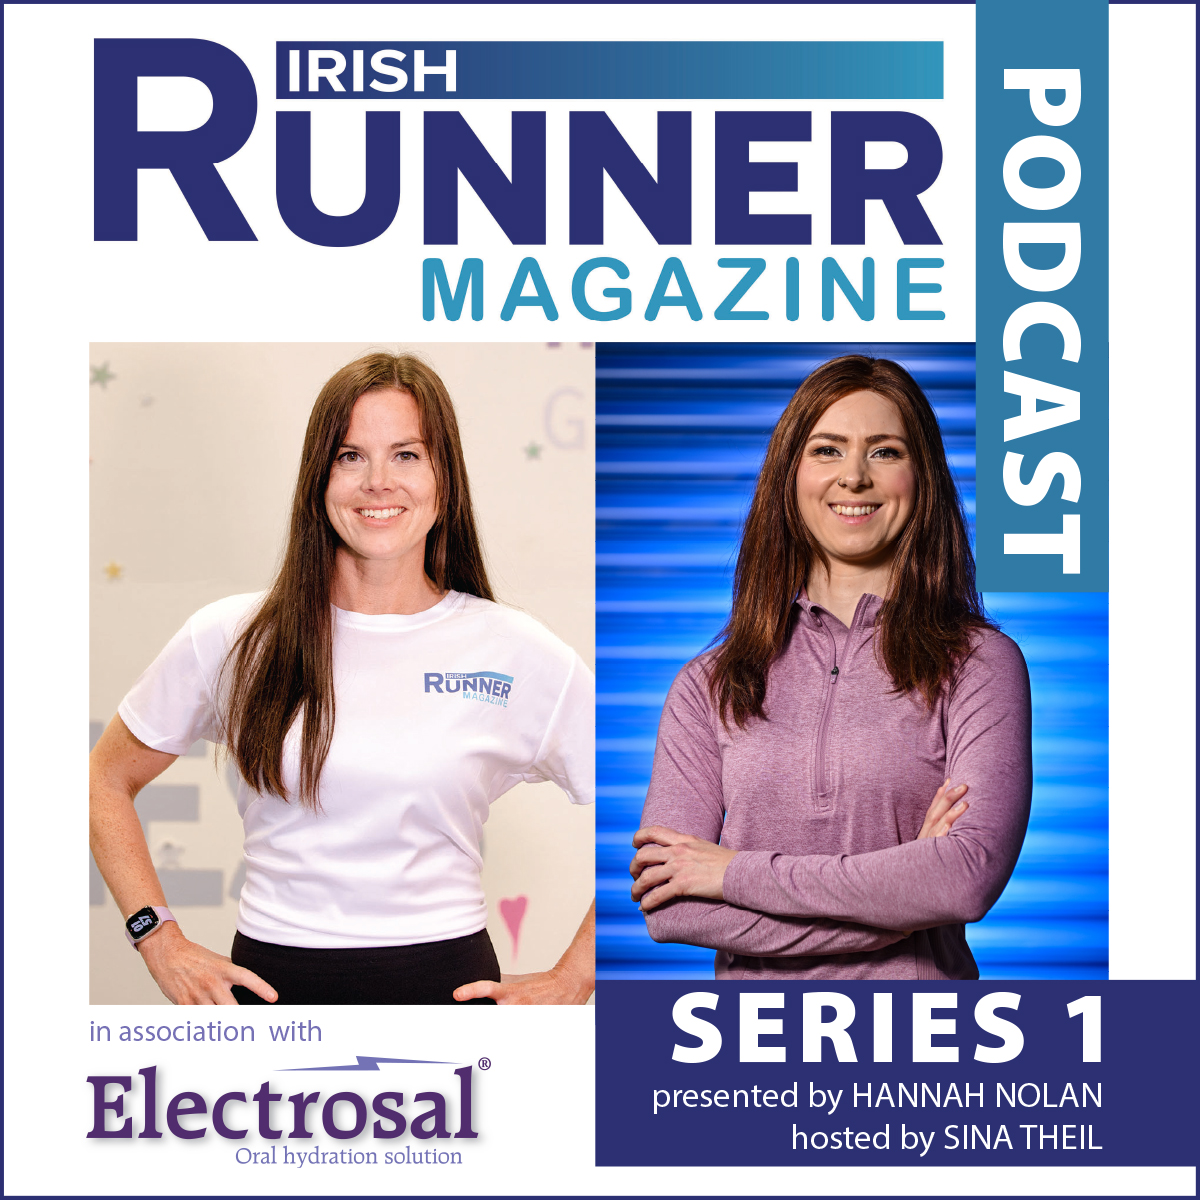 New Irish Runner Magazine Podcast Series